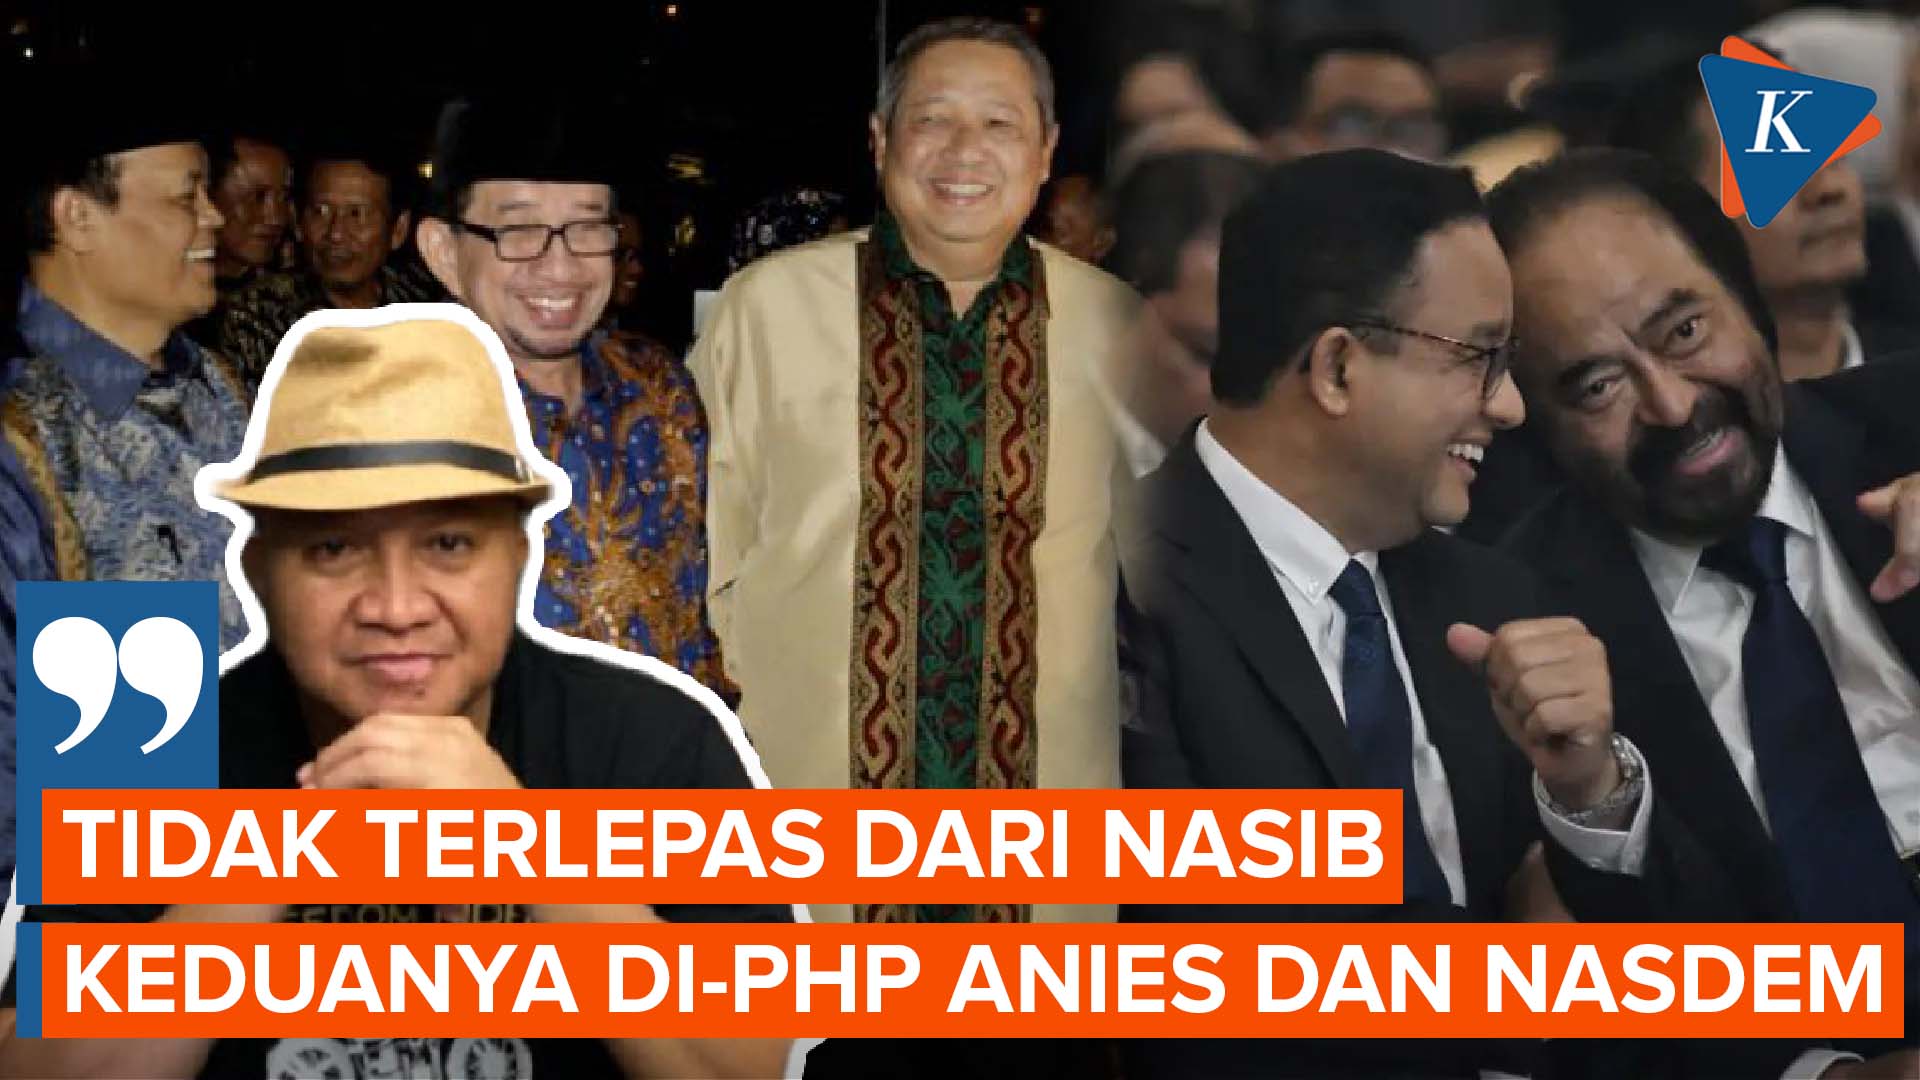 Pengamat Nilai Pertemuan SBY-Salim Segaf Tak Lepas dari Ketidakjelasan Sikap Anies-Nasdem